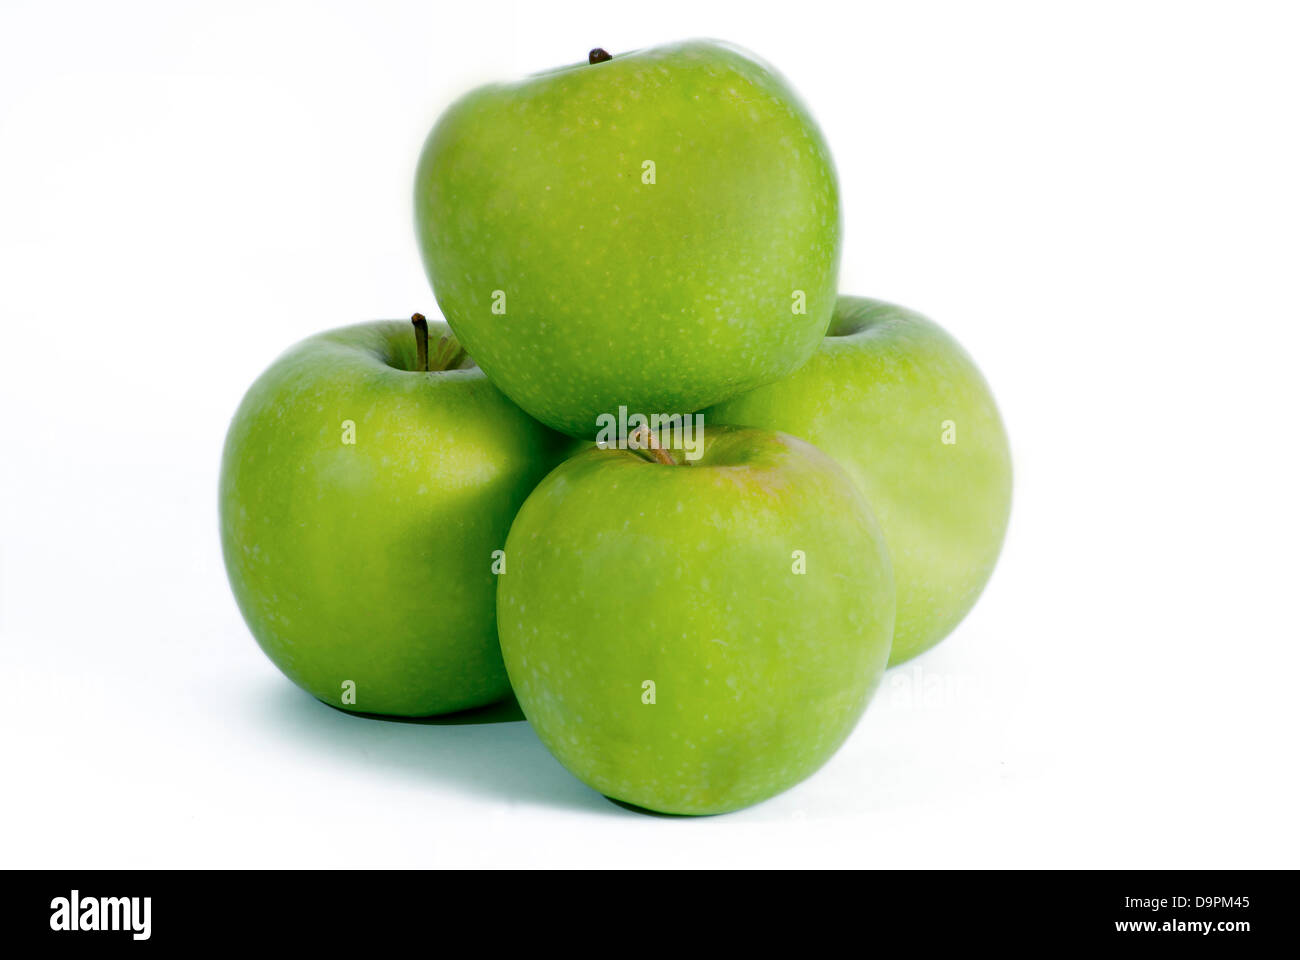 Four Apples on white Stock Photo